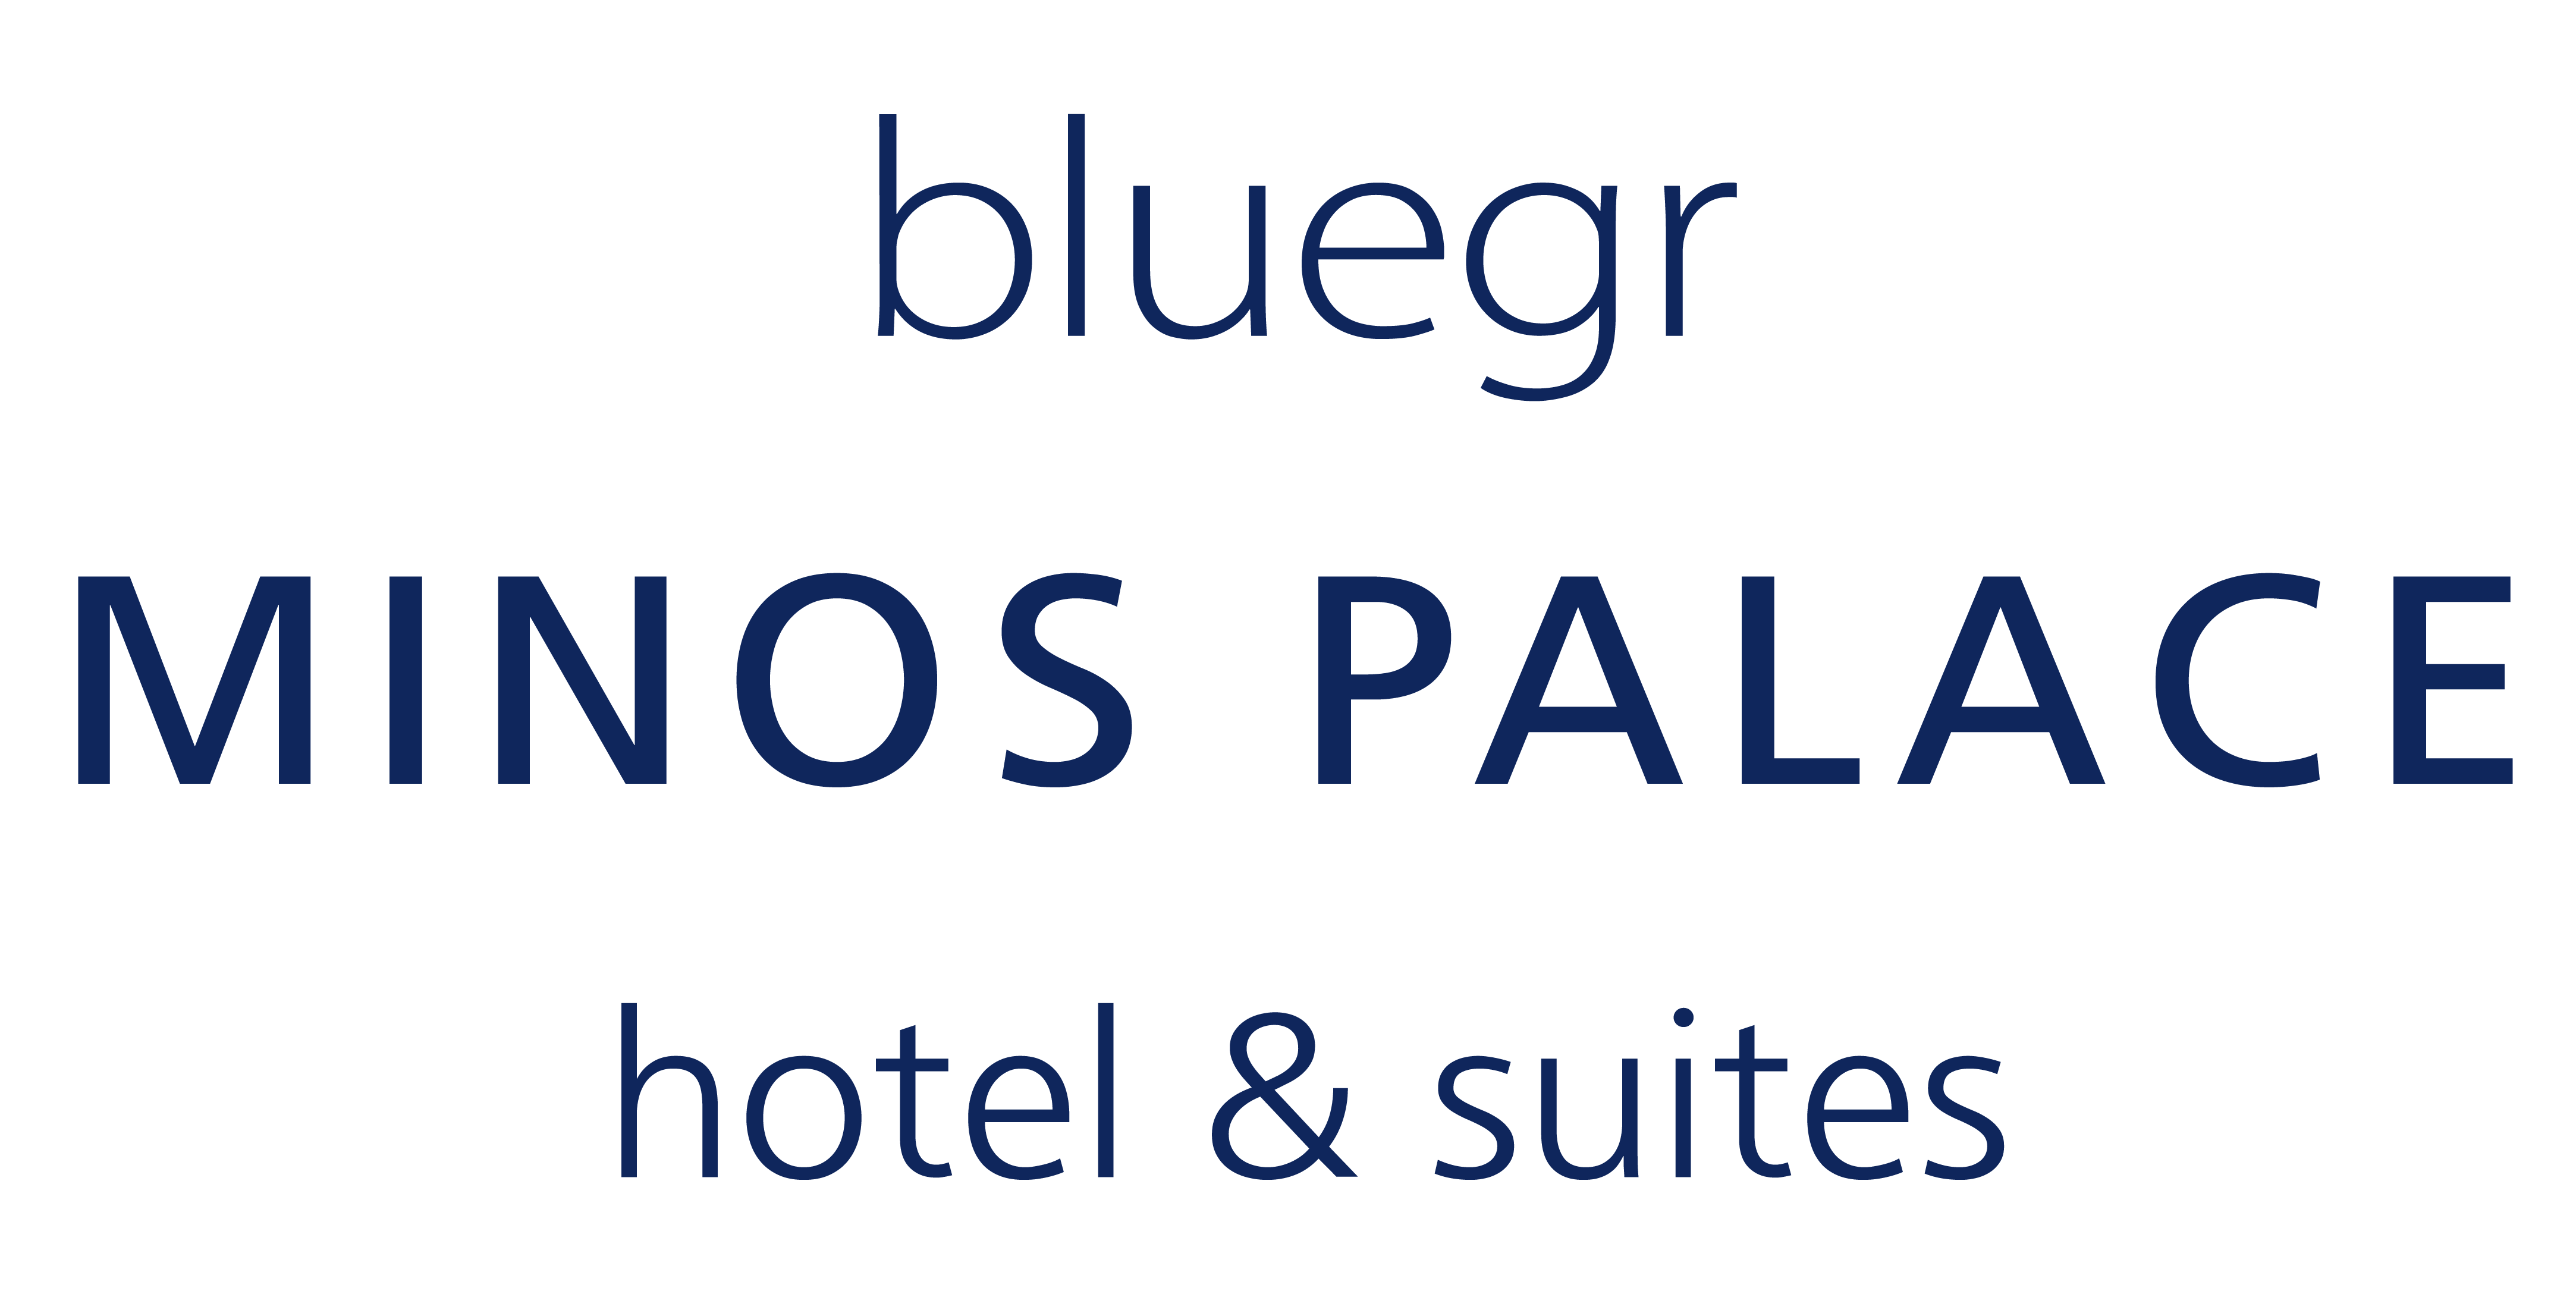 Minos Palace logo